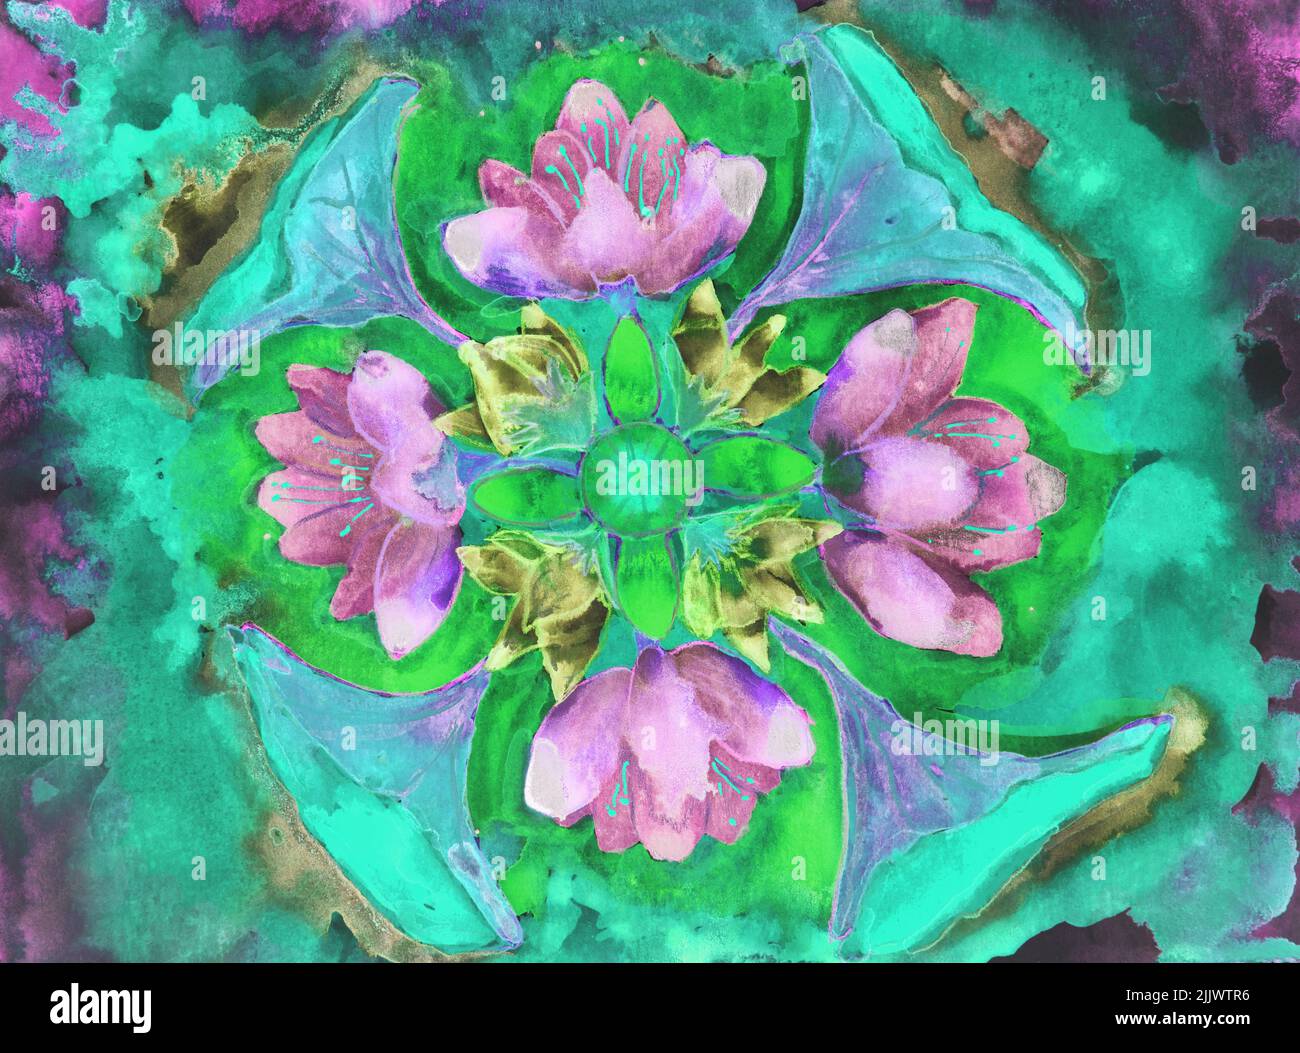 Flores de loto rosa vibrante con fondo verde. La técnica de dabbing cerca de los bordes proporciona un efecto de foco suave debido a la aspereza de la superficie alterada Foto de stock